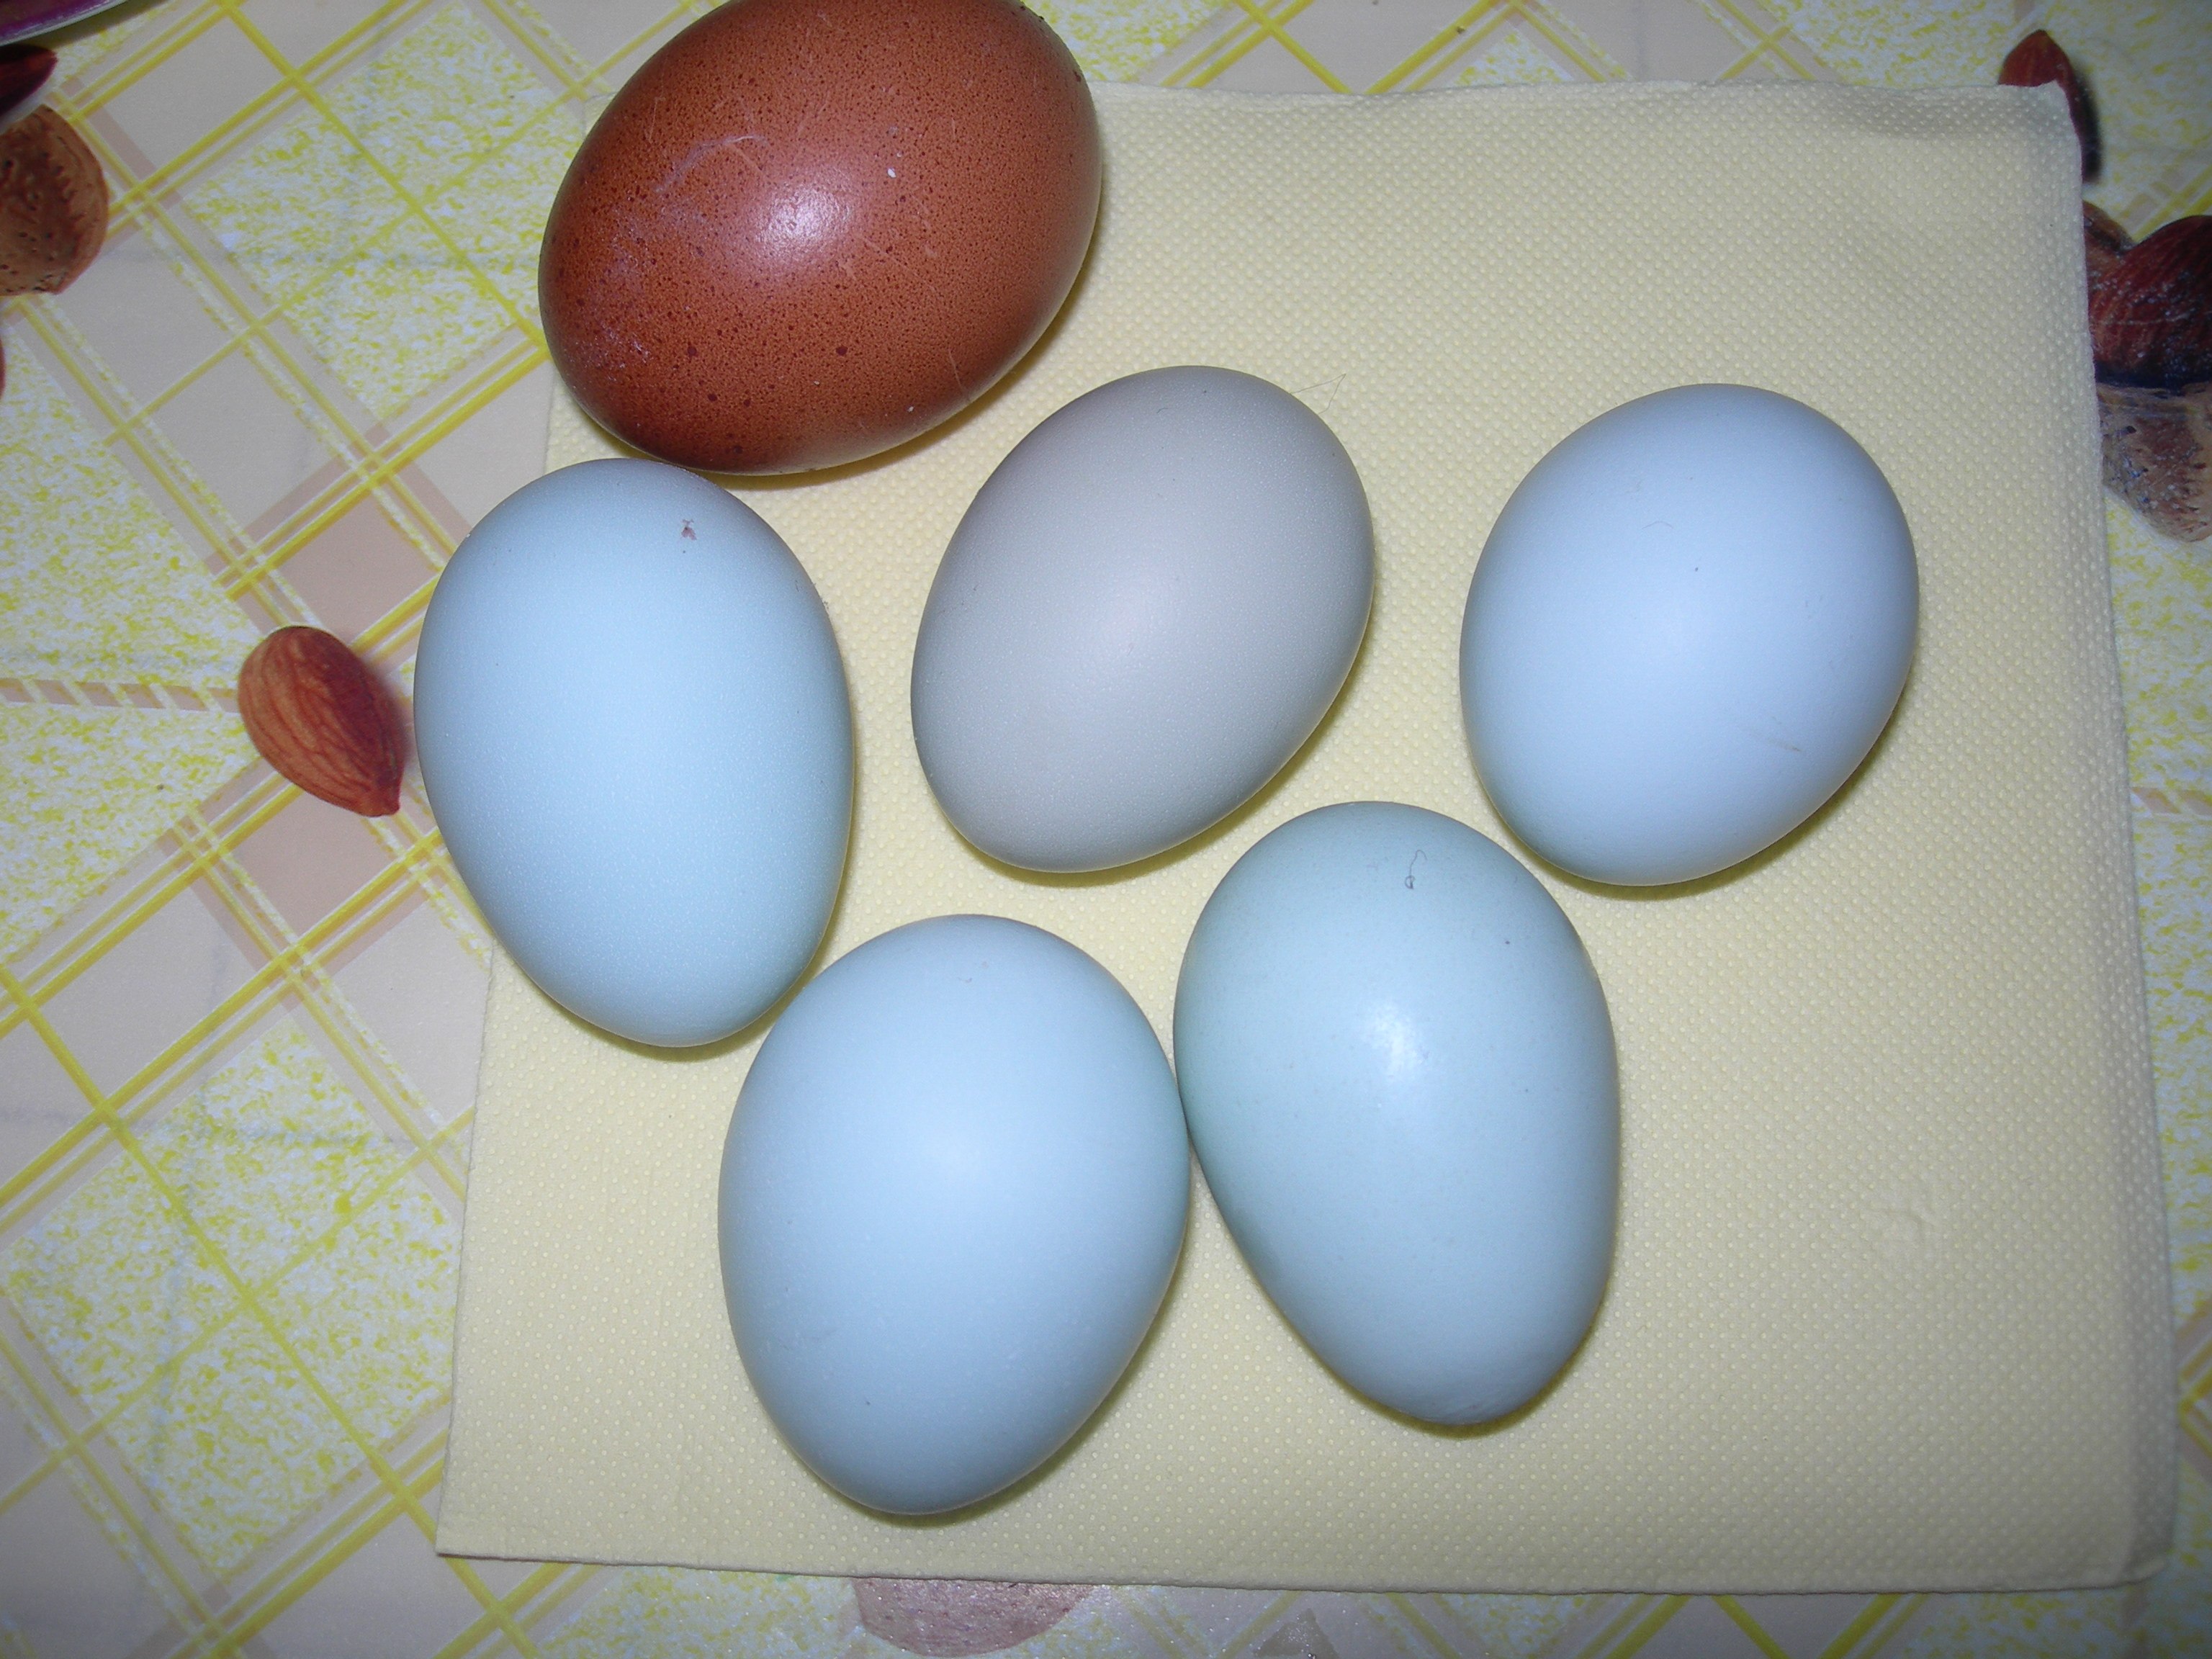 Куры которые несут цветные яйца породы. Куры Араукана яйца. Араукана порода кур яйца. Куры Аракуан яйца. Куры породы Араукана яйца.